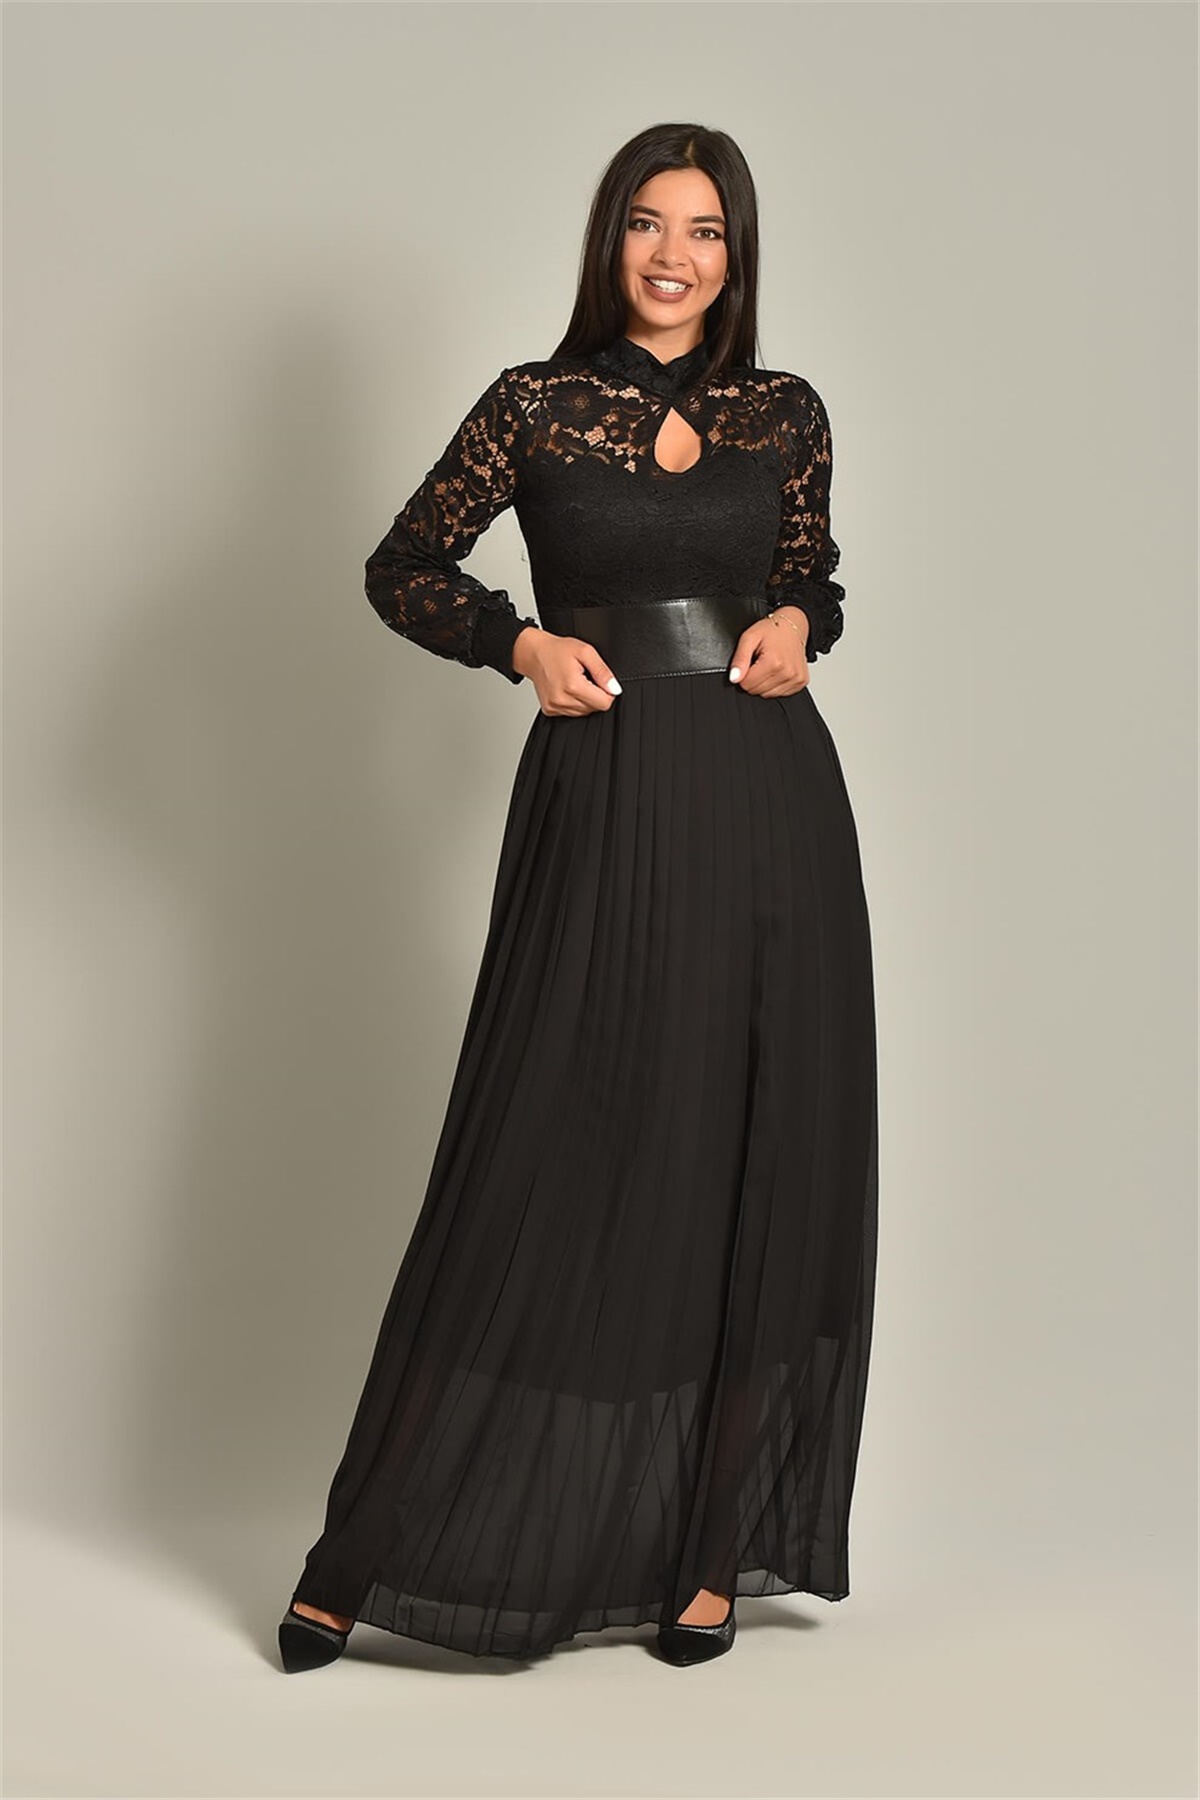 Siyah Kemer Detay Tasarım Abiye Elbise - Moda Kapımda İle Kapınızda!